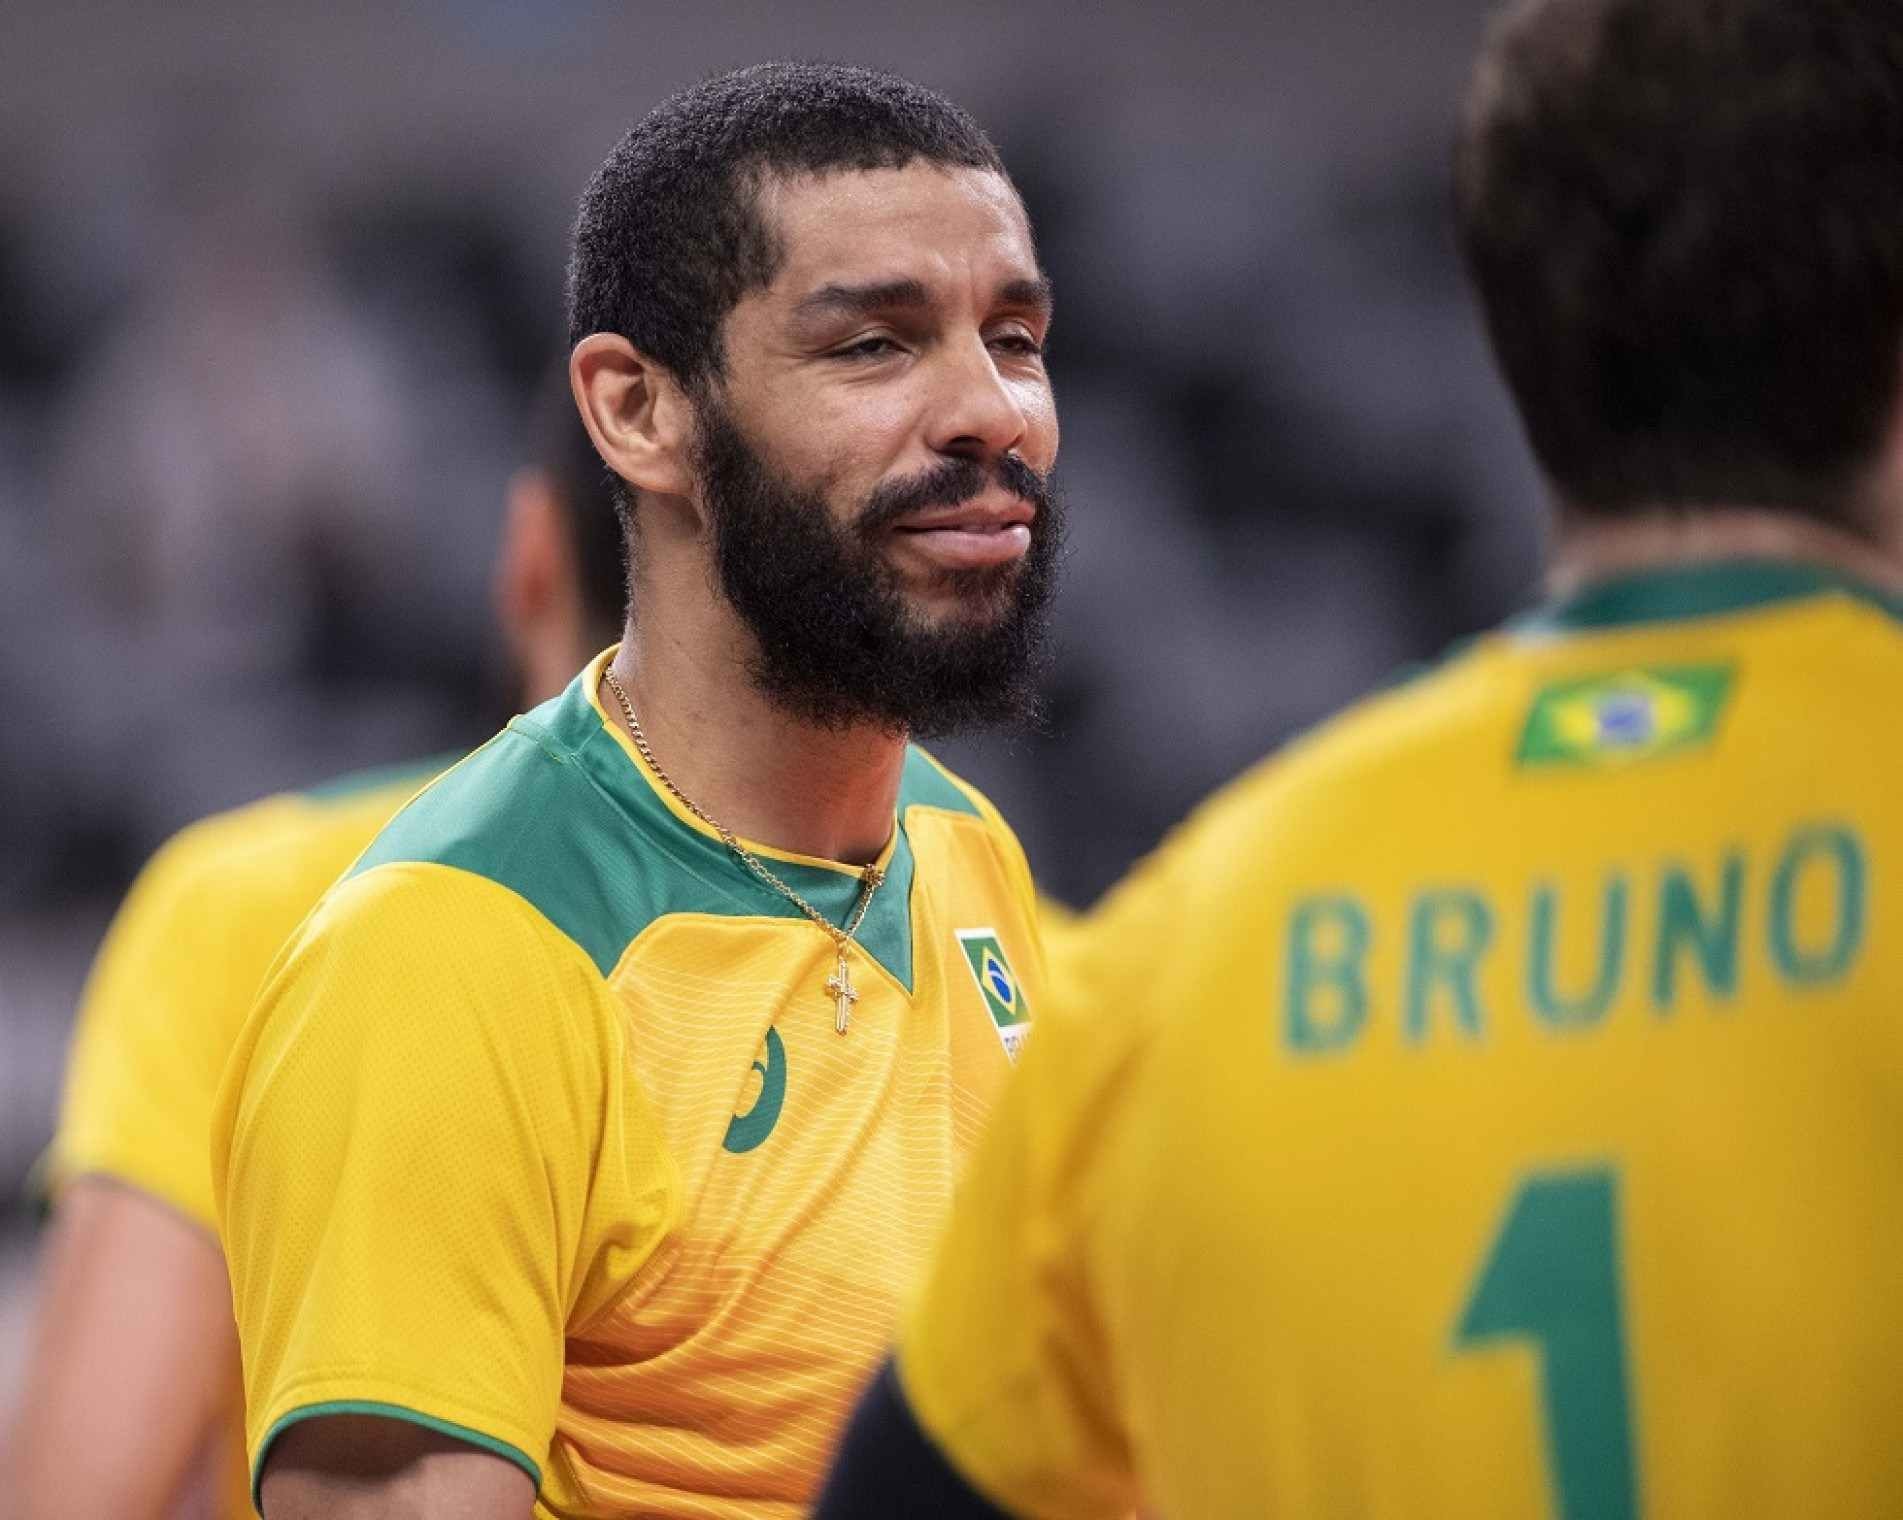 Wallace do Brasil durante o jogo de volei entre Brasil x França nos Jogos Olímpicos de Tóquio 2020 realizados em 2021, o jogo realizada na Arena de Ariake em Toquio, Japão.